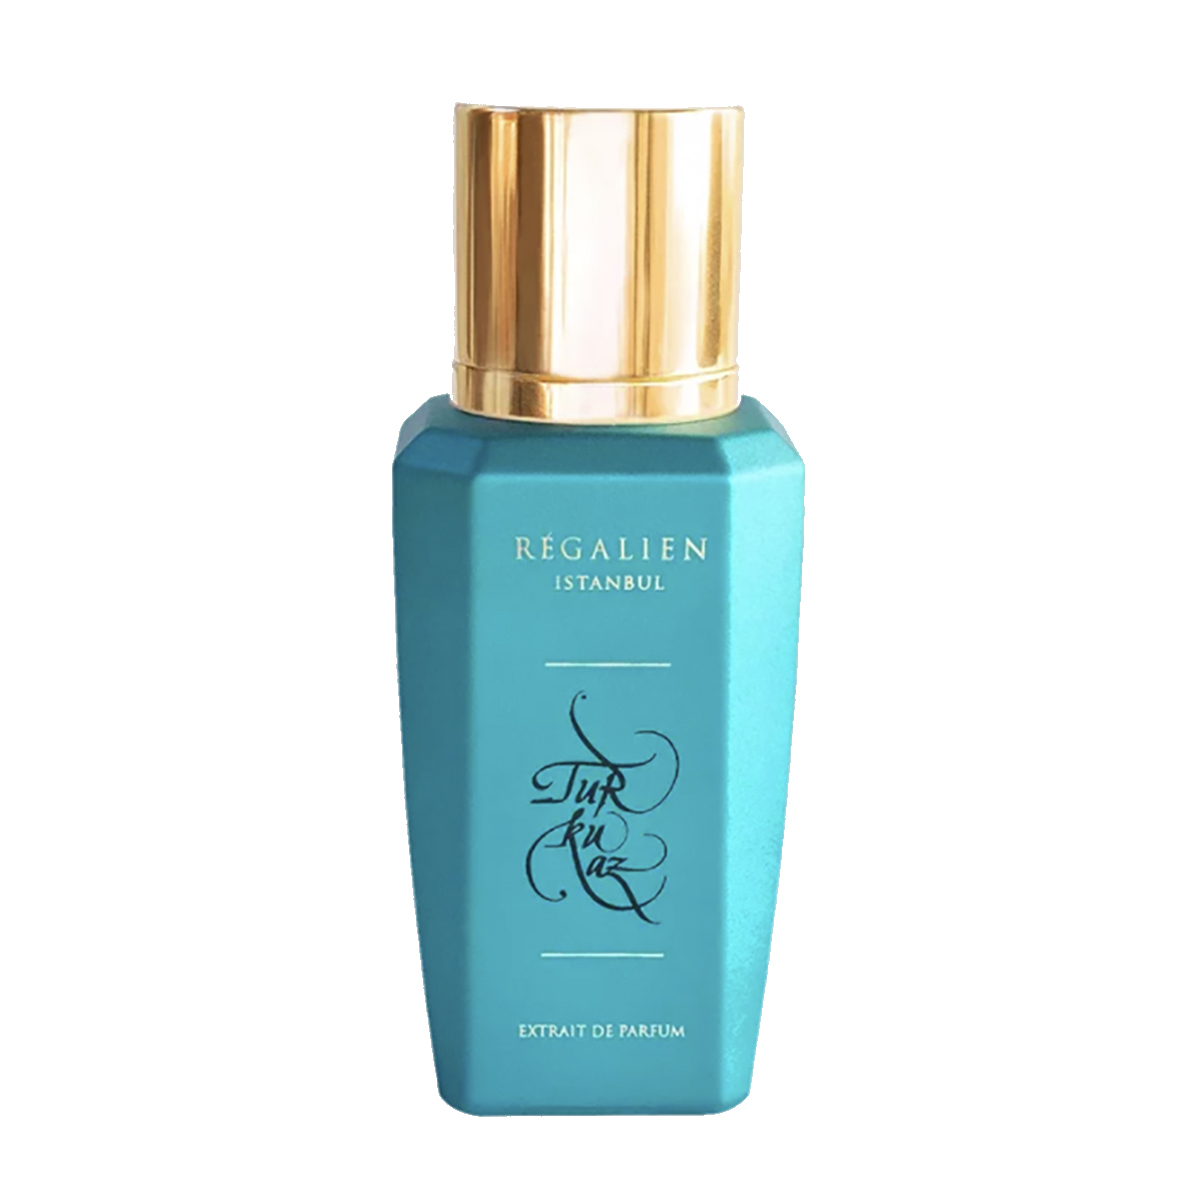 Turkuaz Extrait de parfum 50ml - Regalien